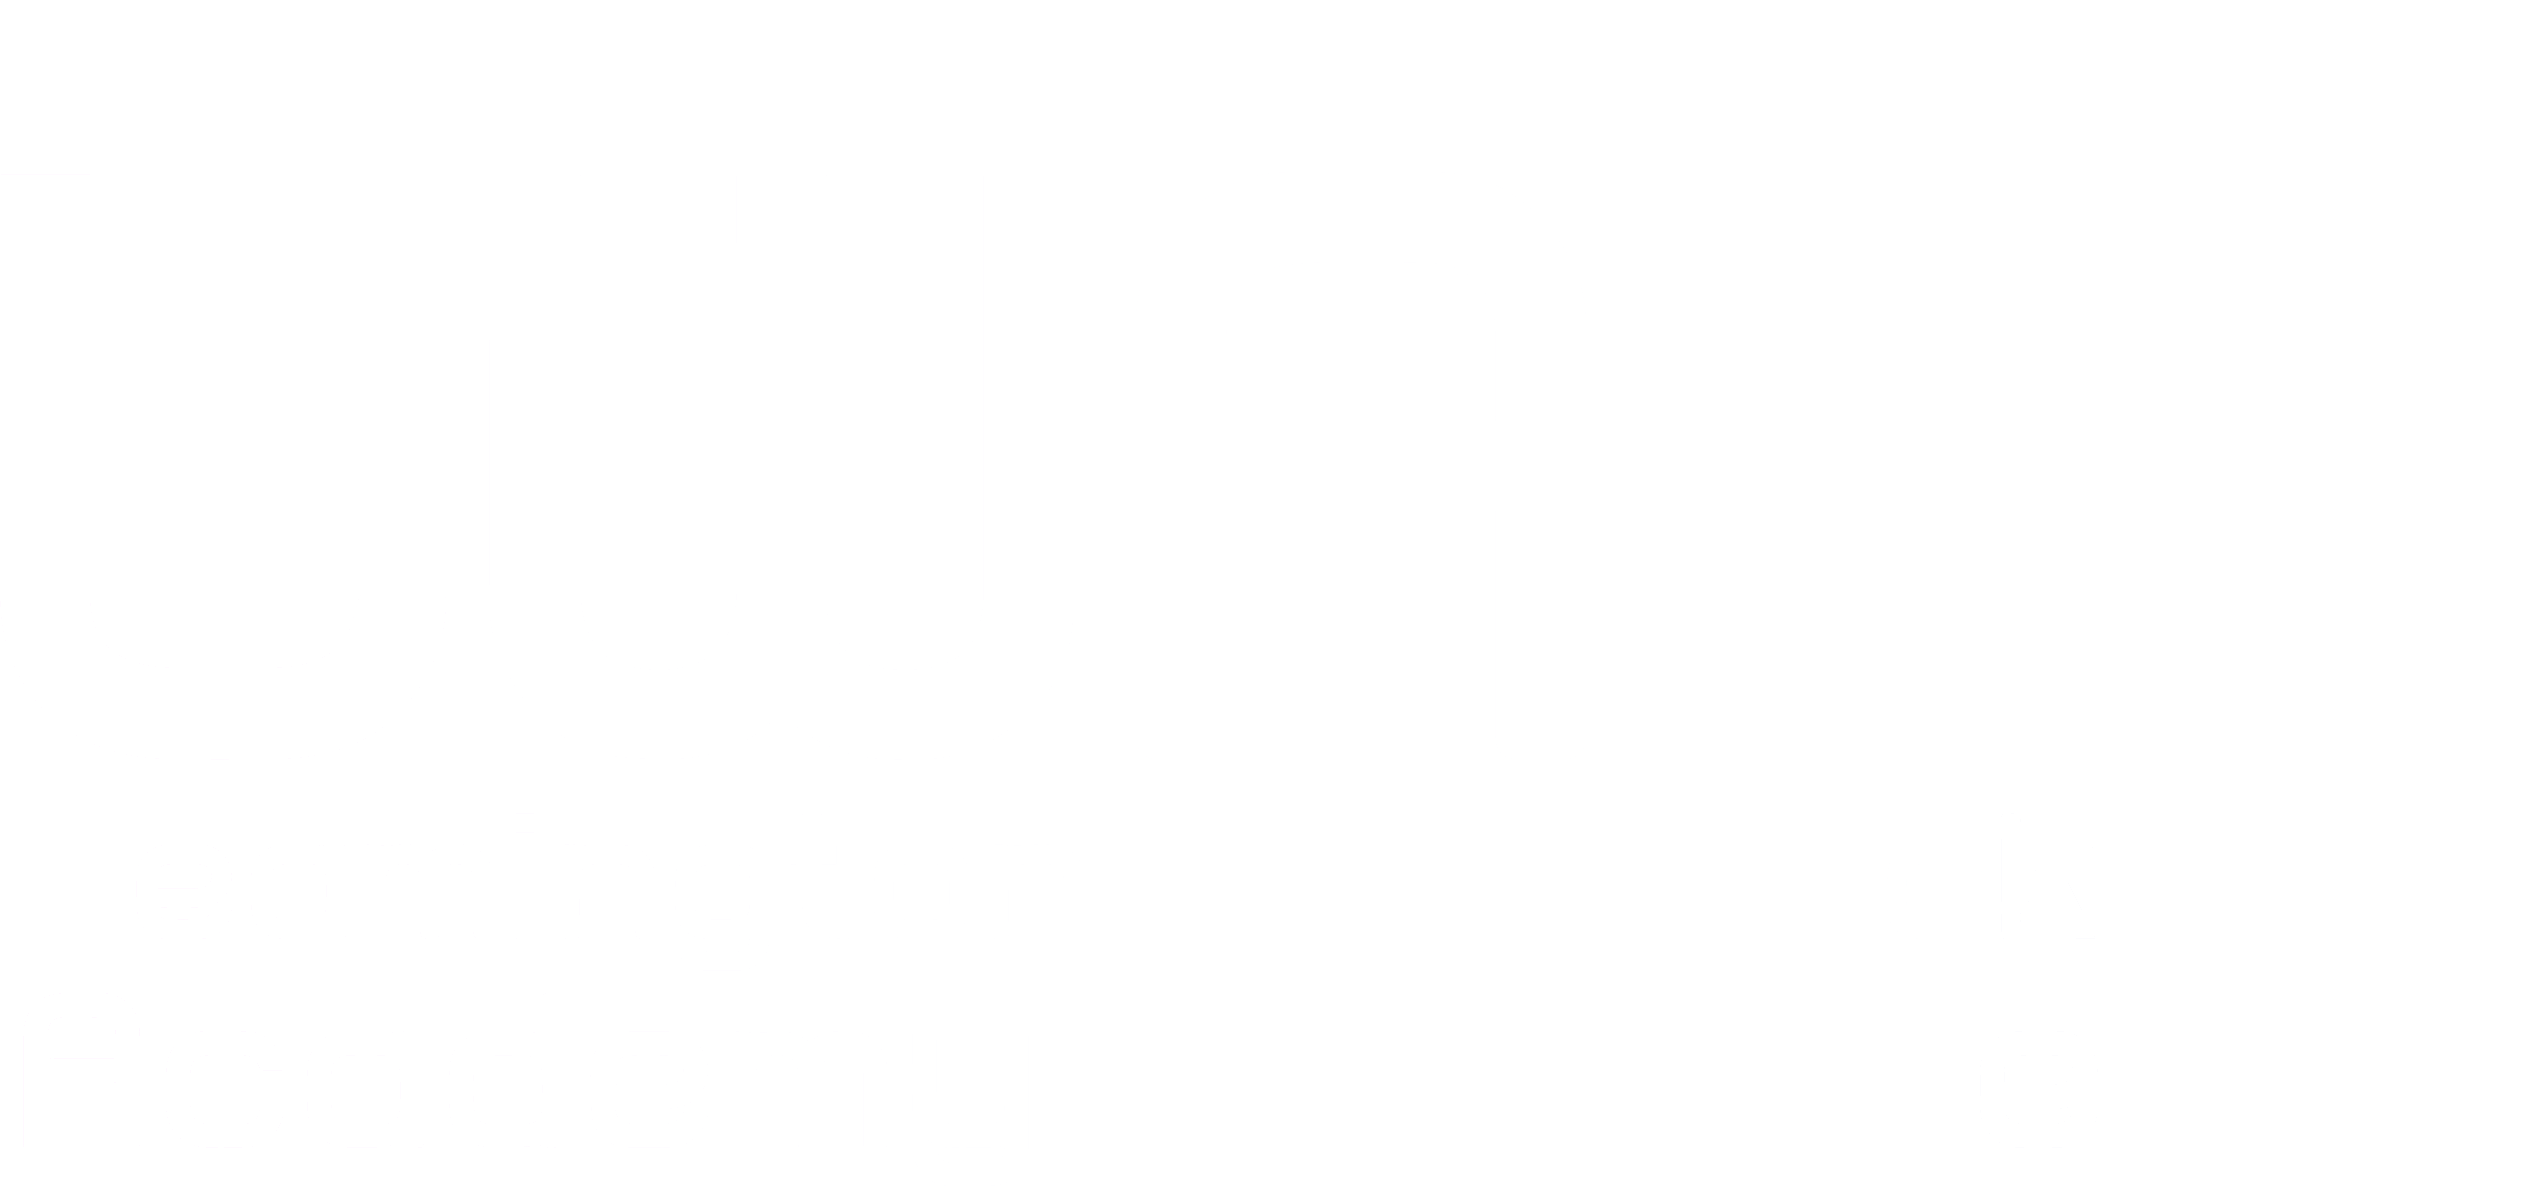 LWAD - Leamington & Warwick Academy of Dance